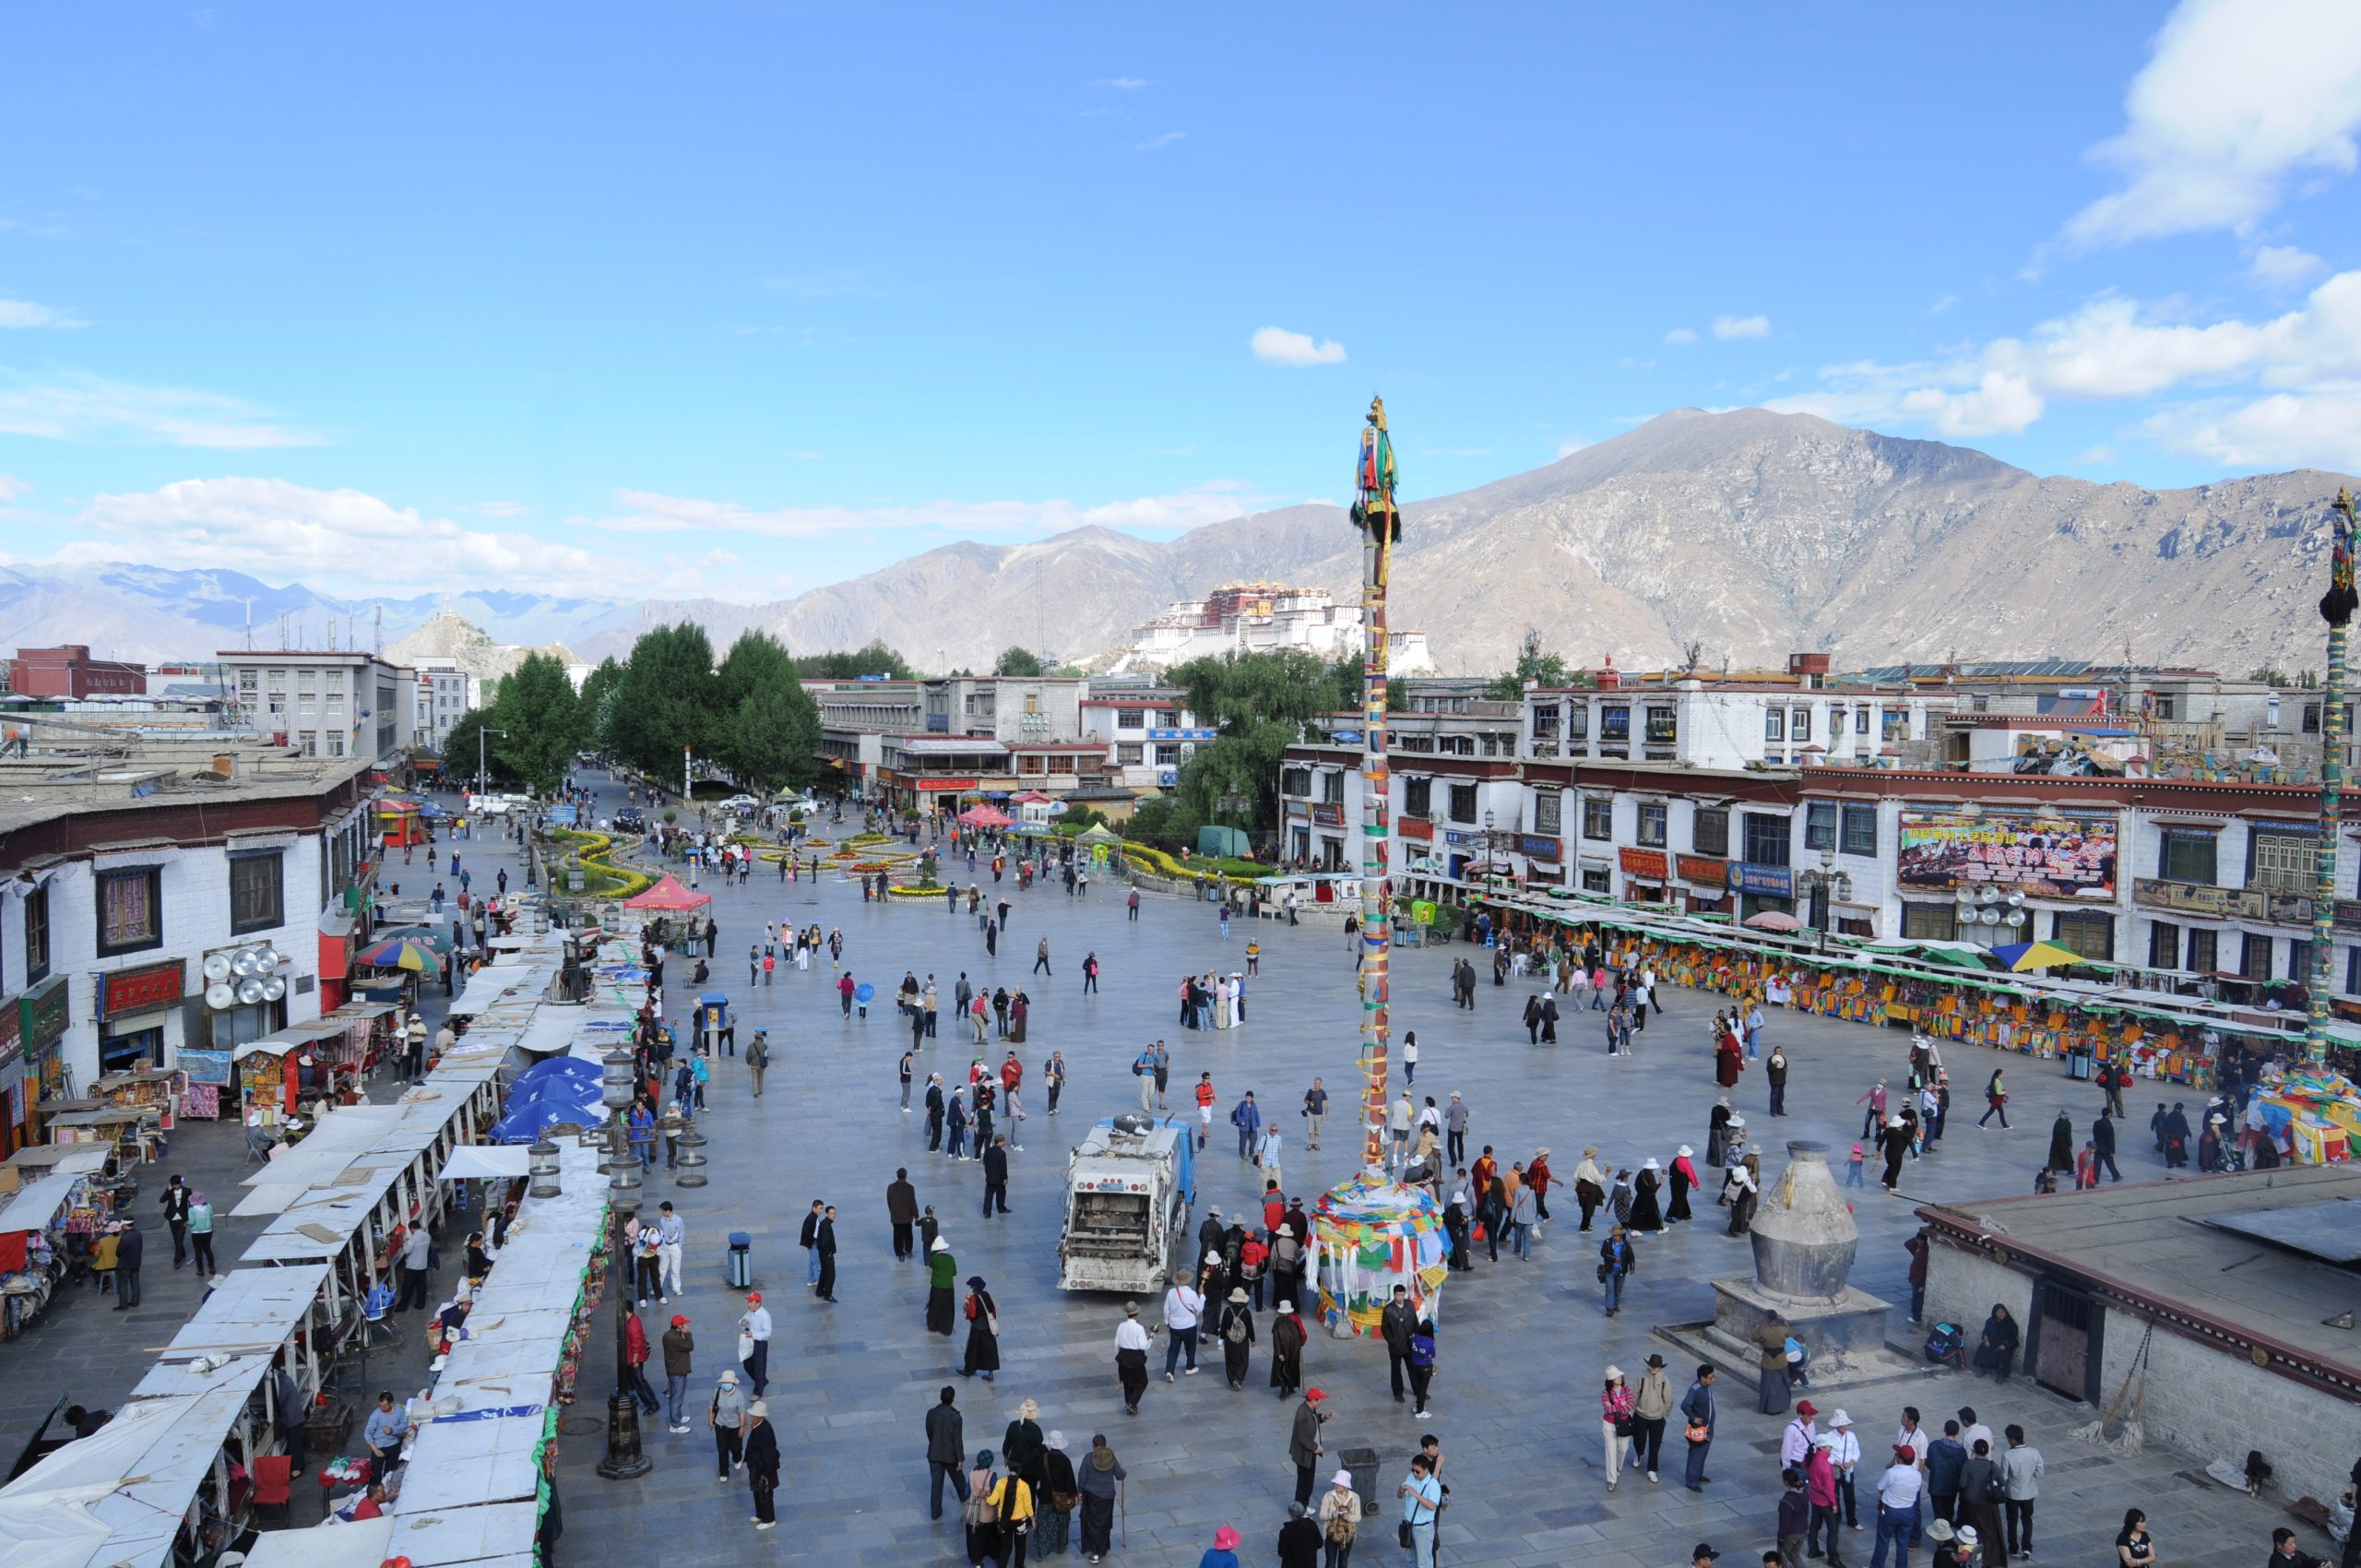 Lhasa – Kathmandu Overland tour – 08 Days